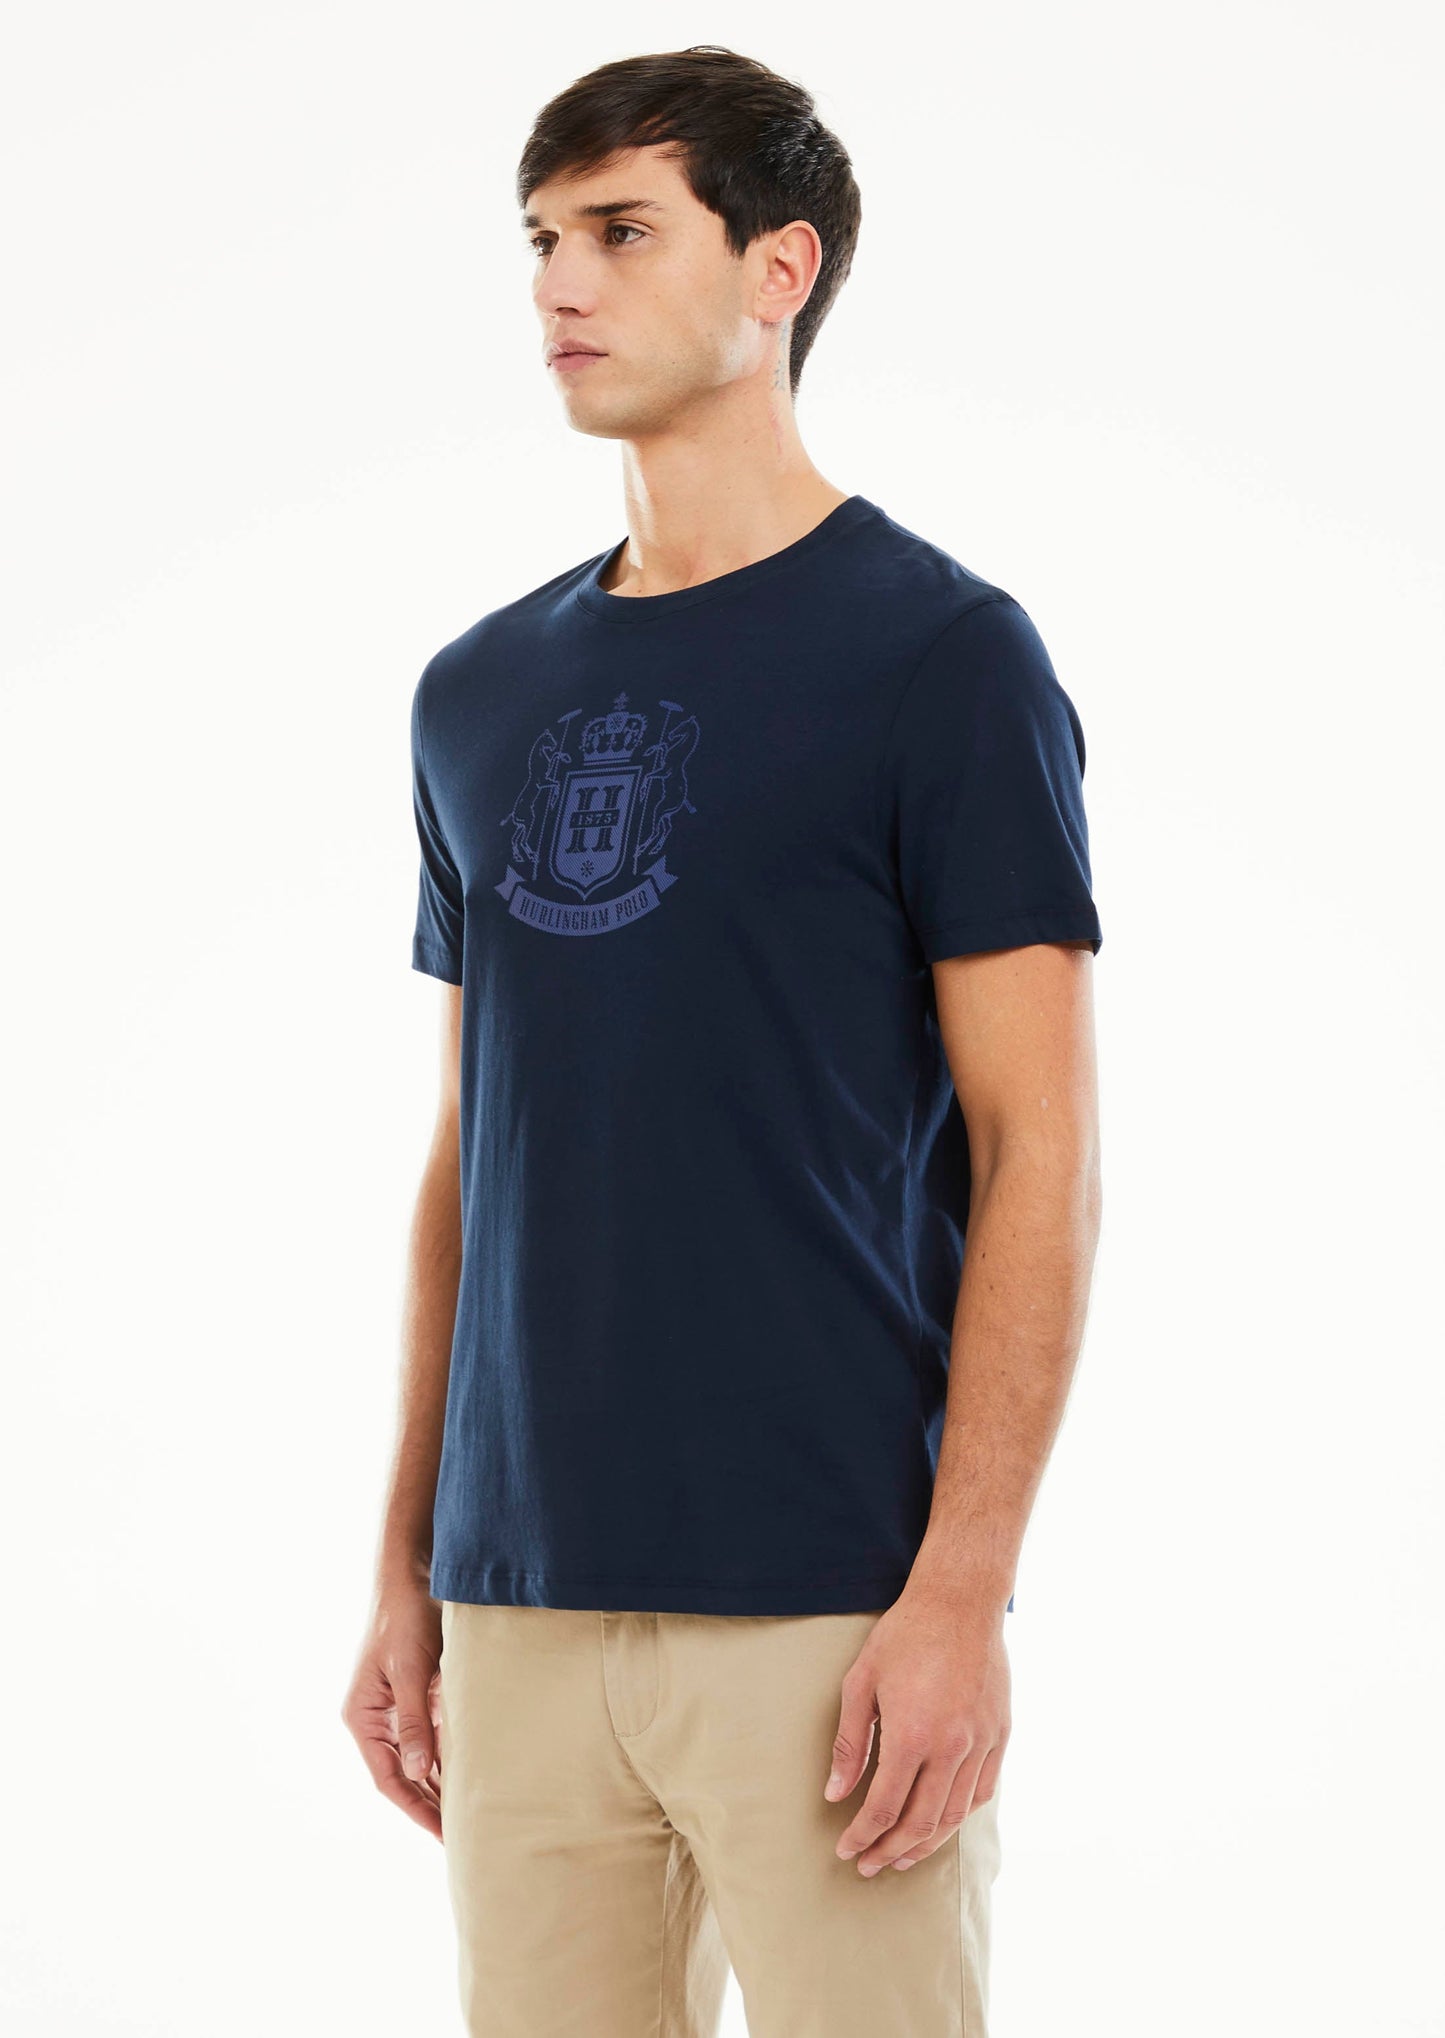 Tartan Crest T-Shirt - Navy